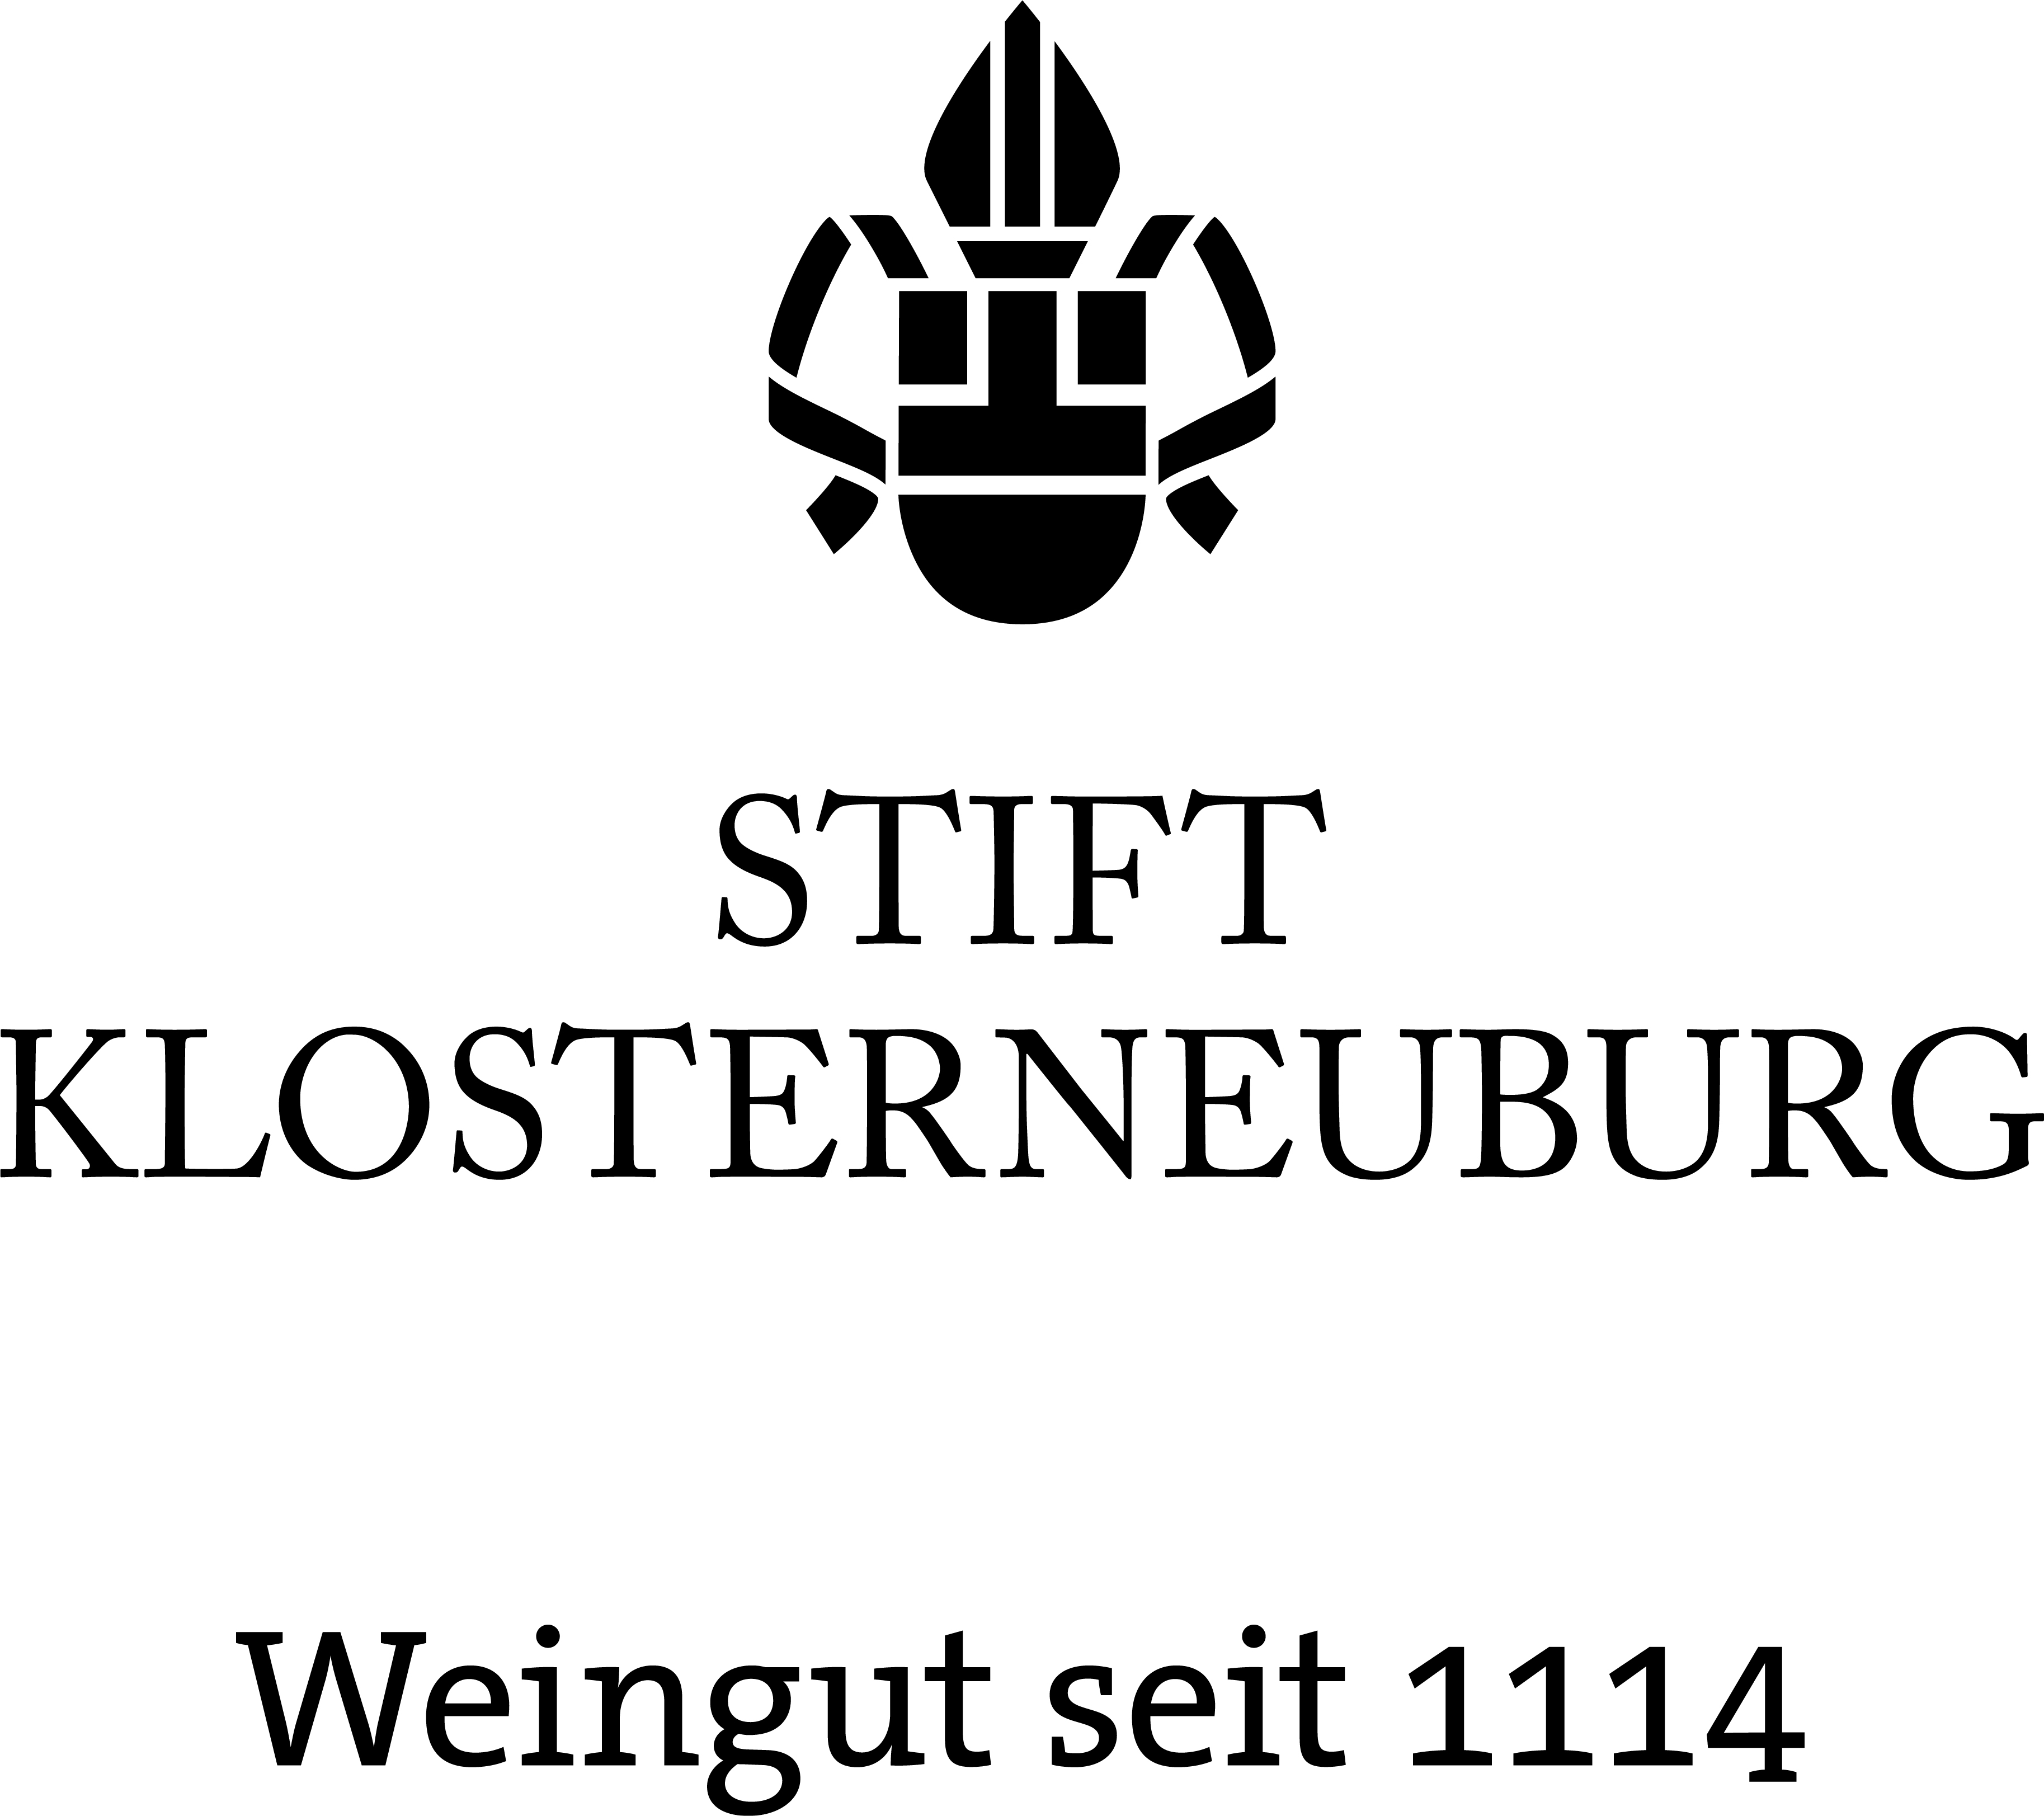 Weingut Stift Kloterneuburg GmbH